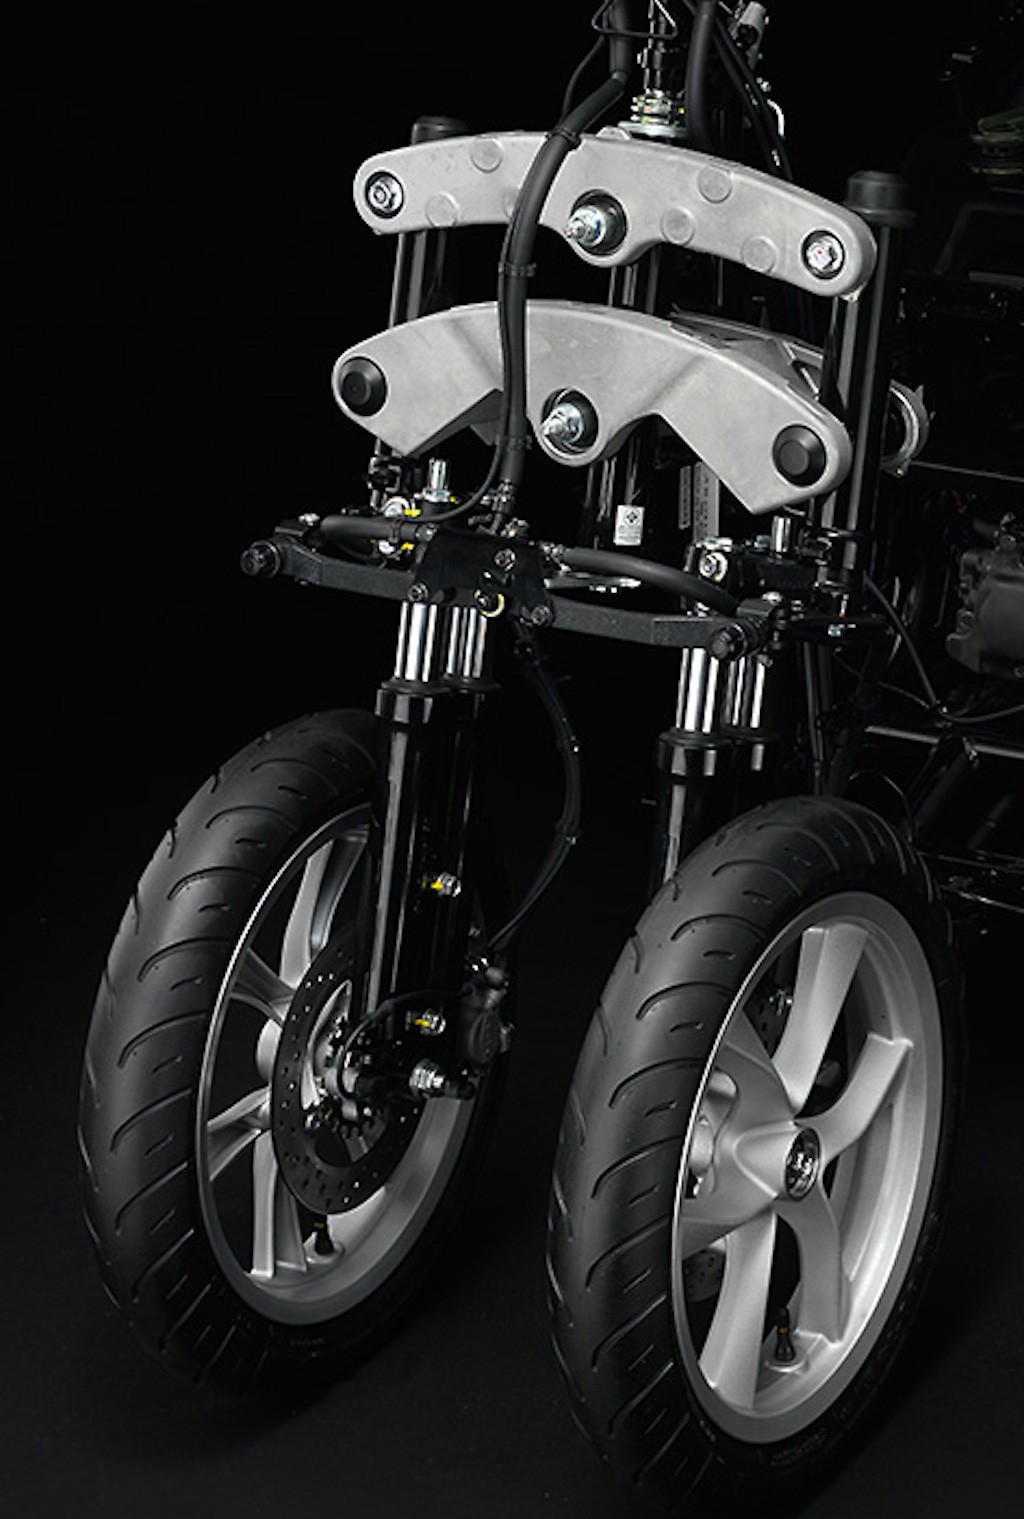 Lý do gì khiến Yamaha lại thiết kế và tung ra dòng xe tay ga 3 bánh “siêu dị” Tricity? ảnh 10